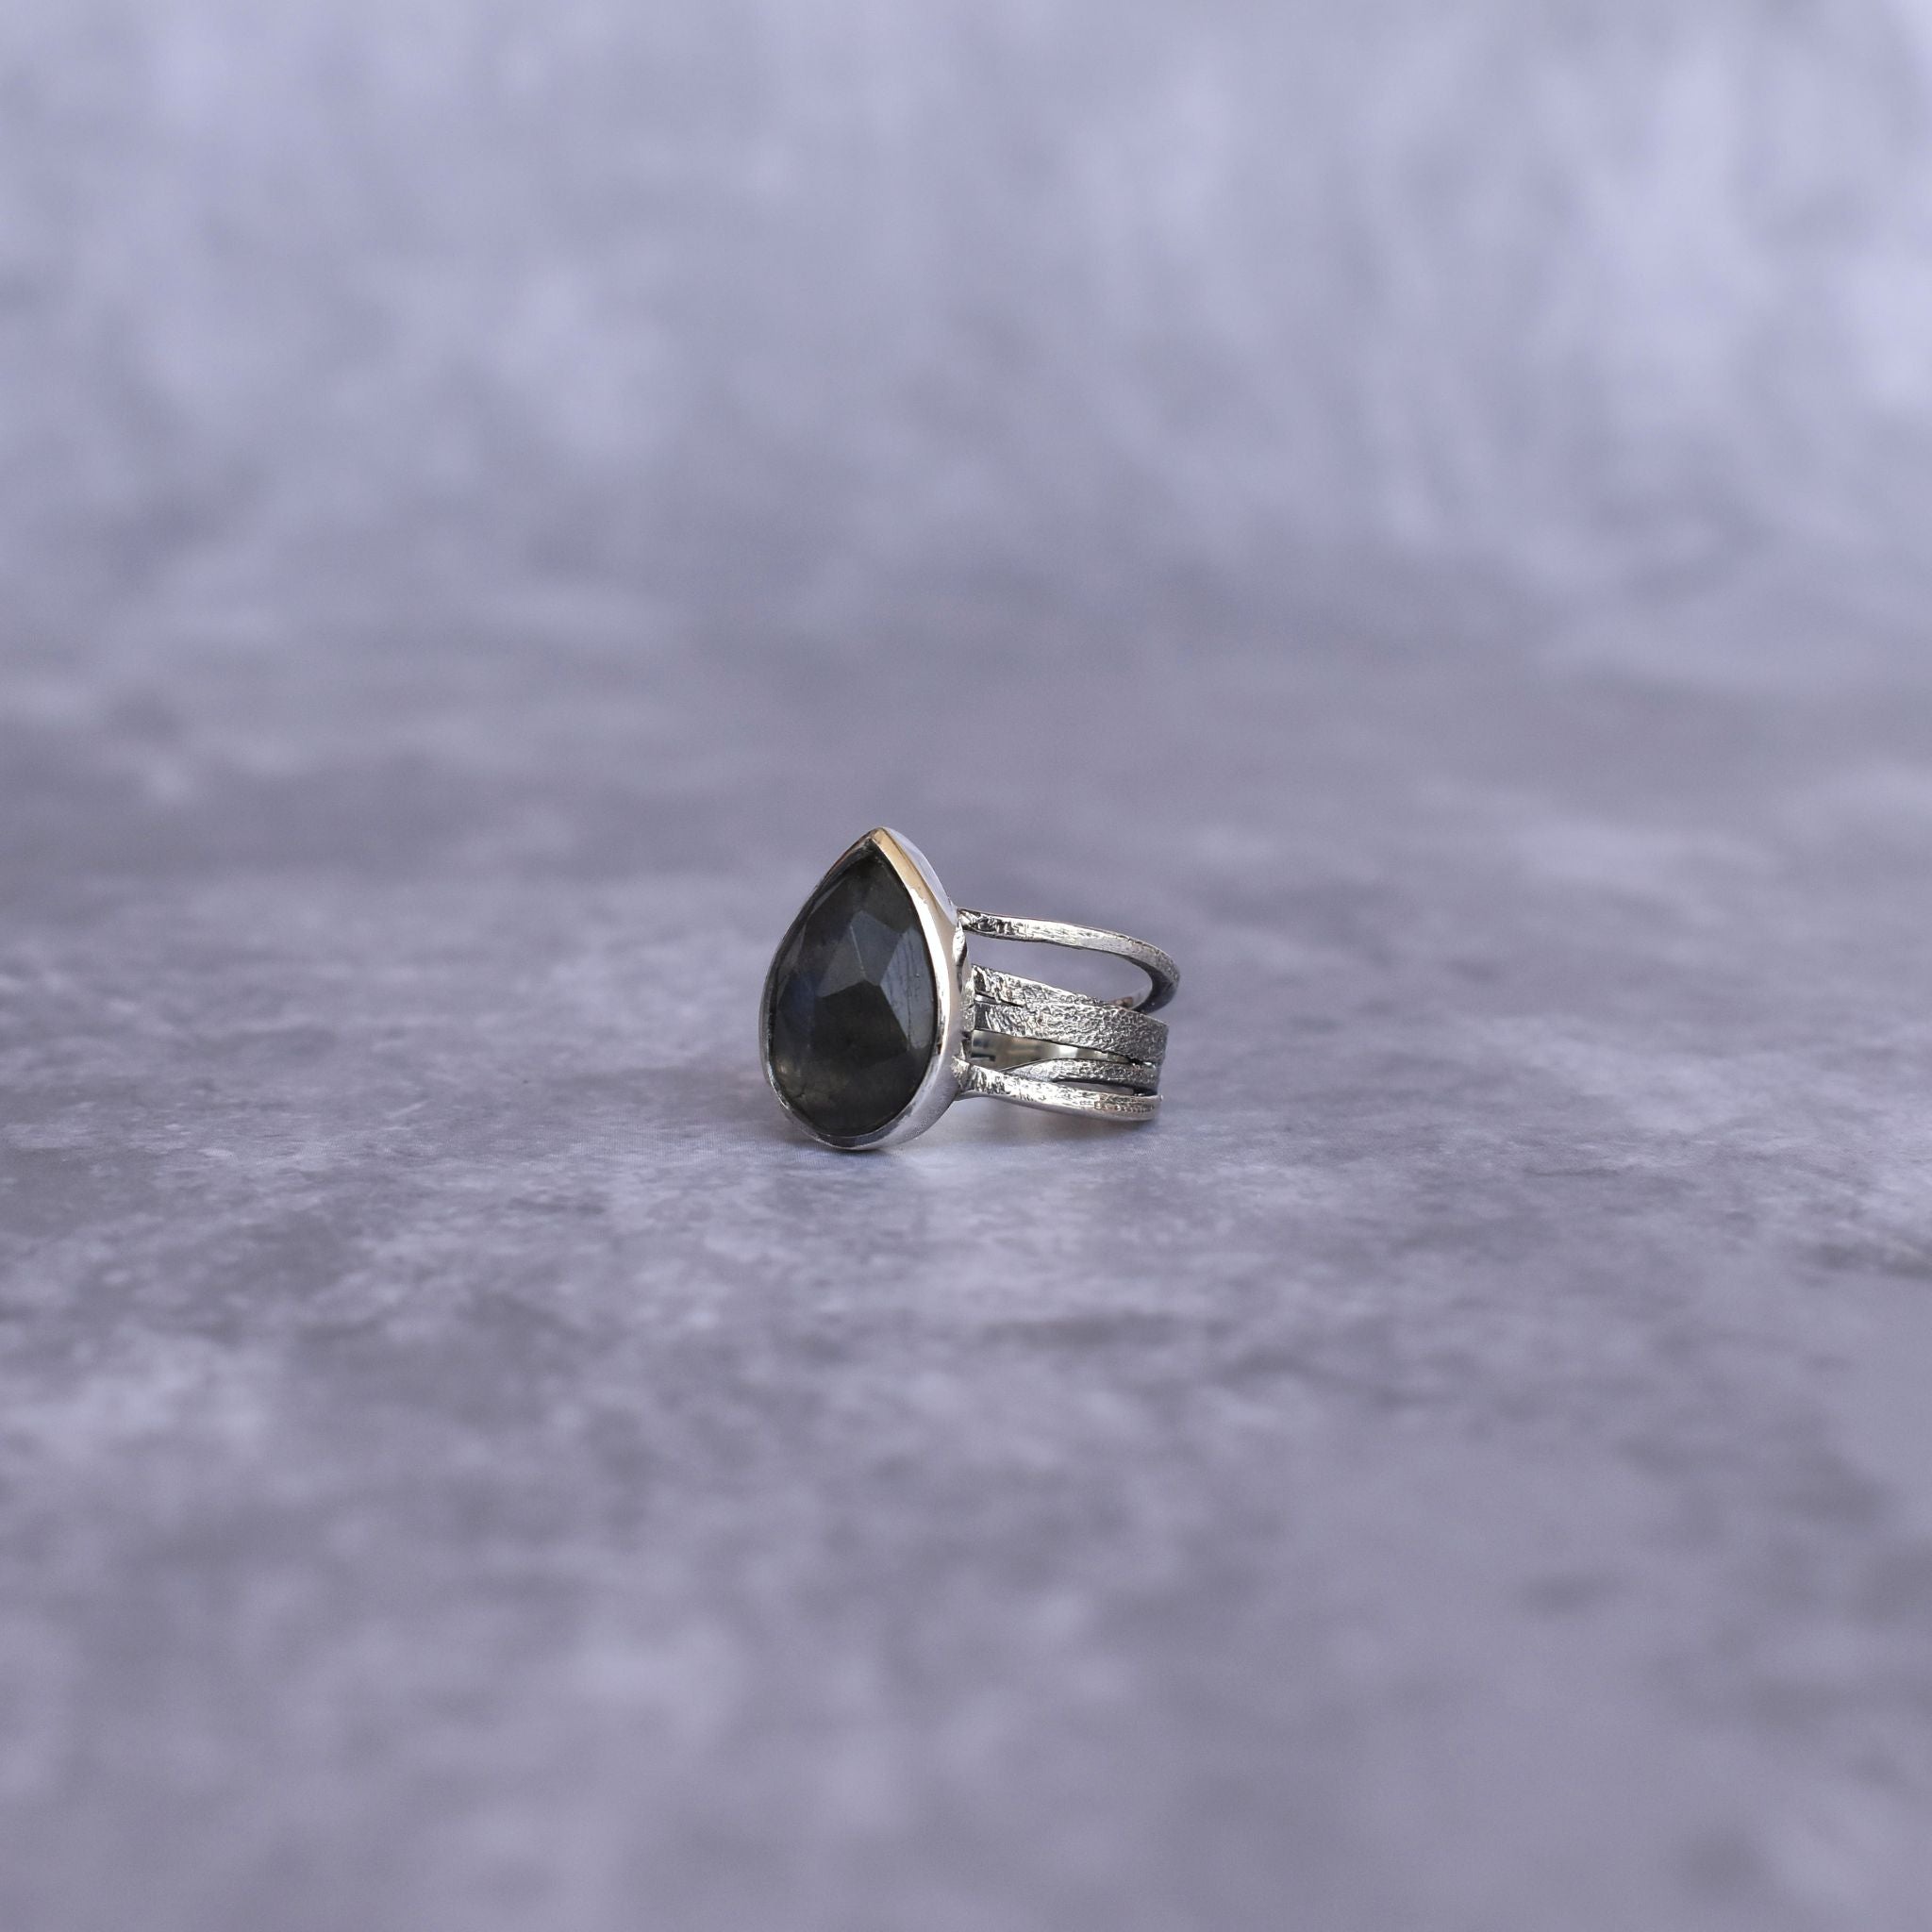 Rustic - Labradorite Ring